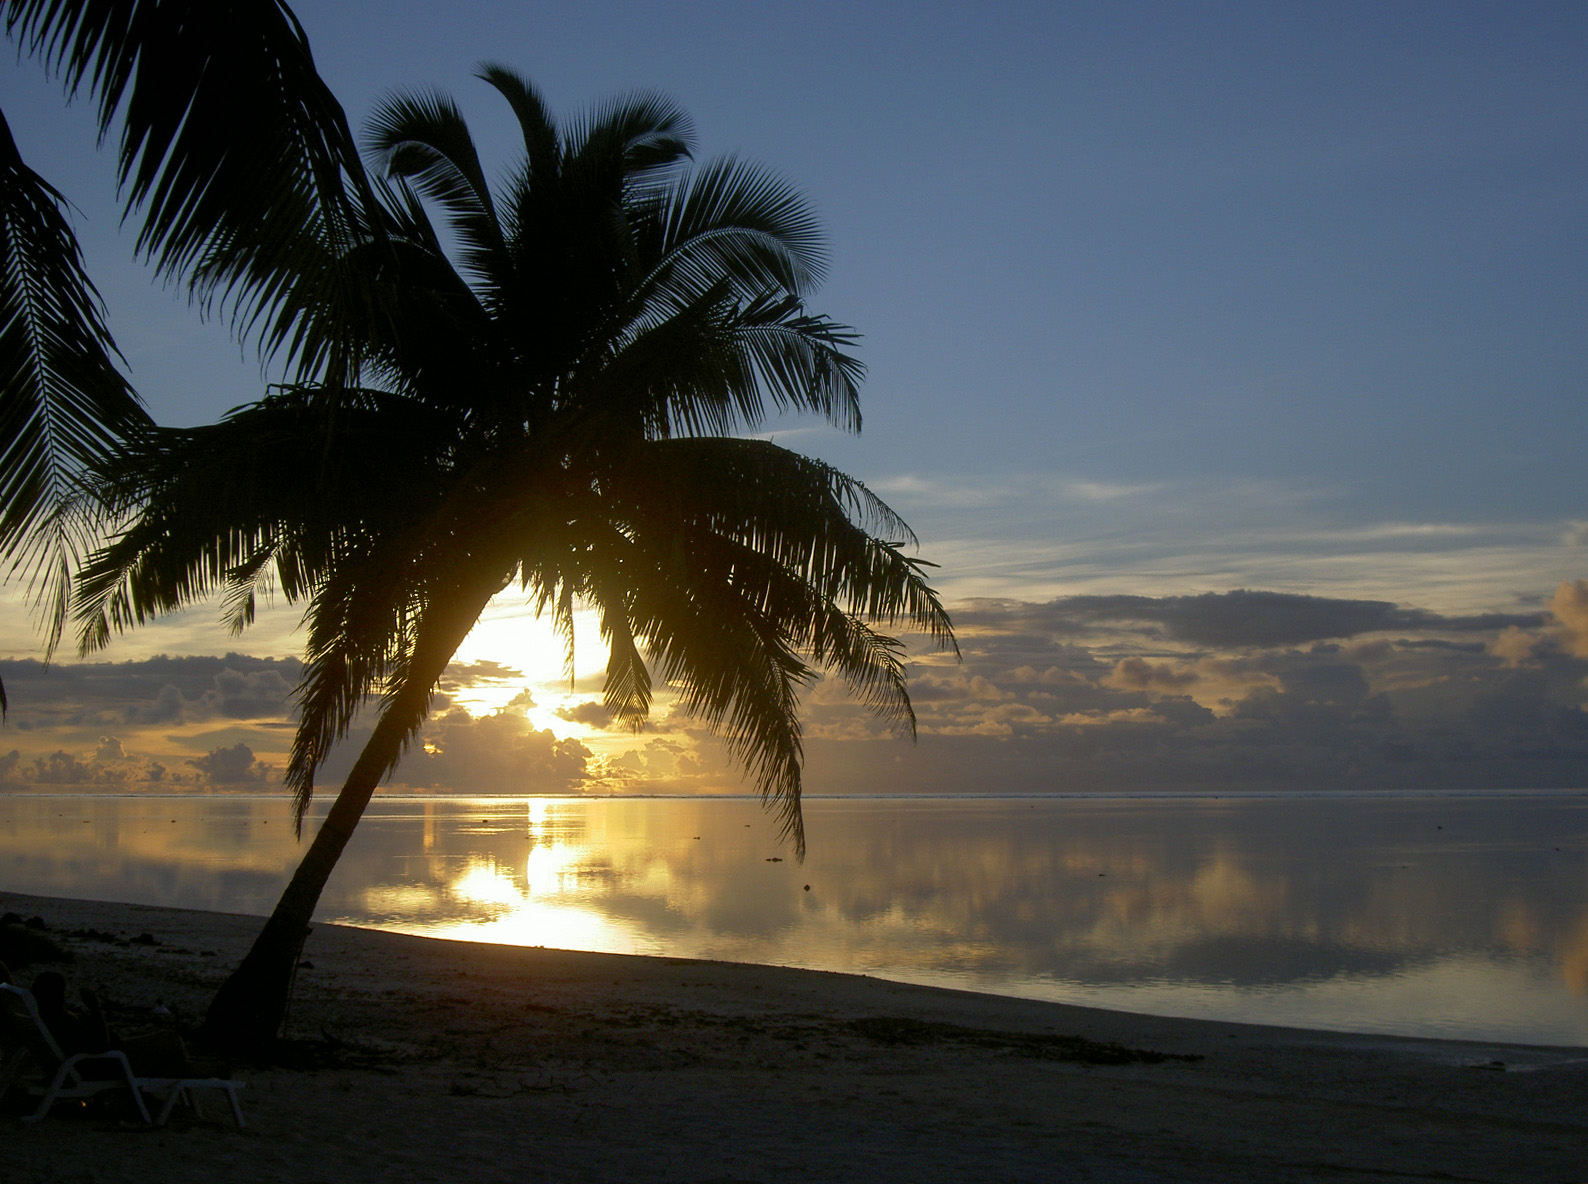 غروب الشمس في جزر كوك - مدونة صورة